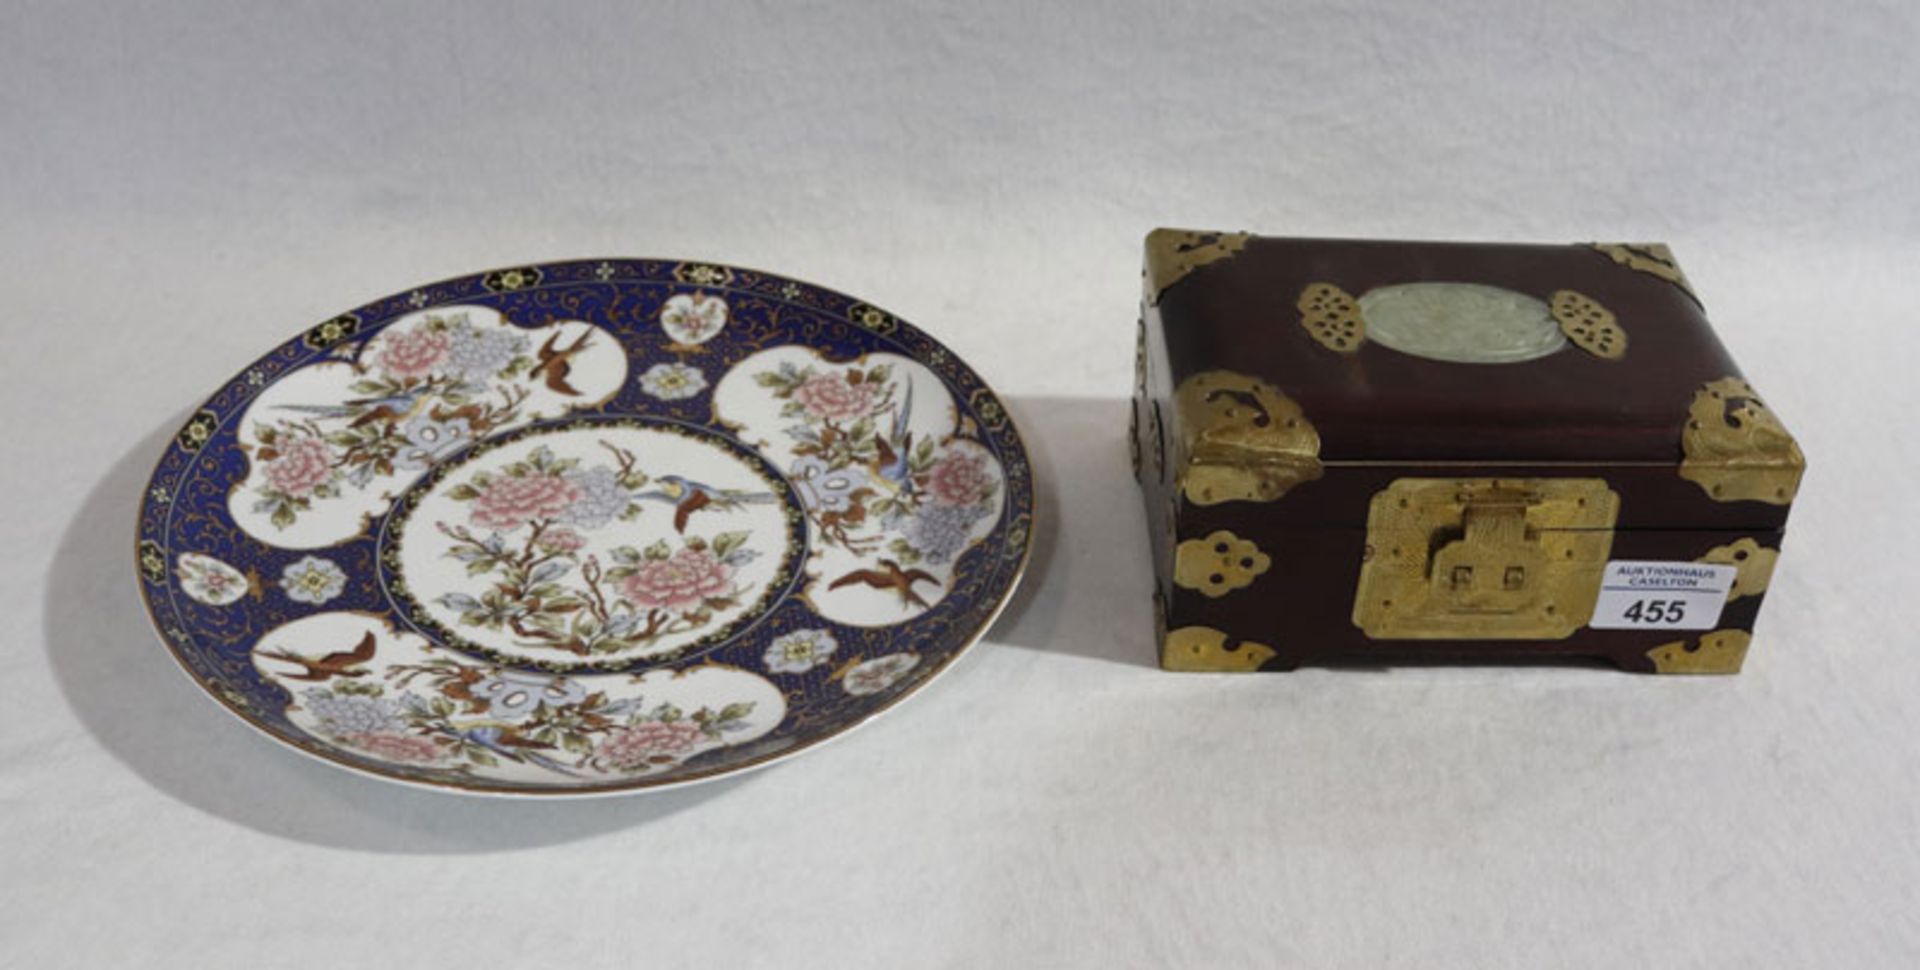 Asiatischer Teller mit Blumen- und Vogeldekor, D 26 cm, und Holz Schmuckkästchen mit Jade-Verzierung